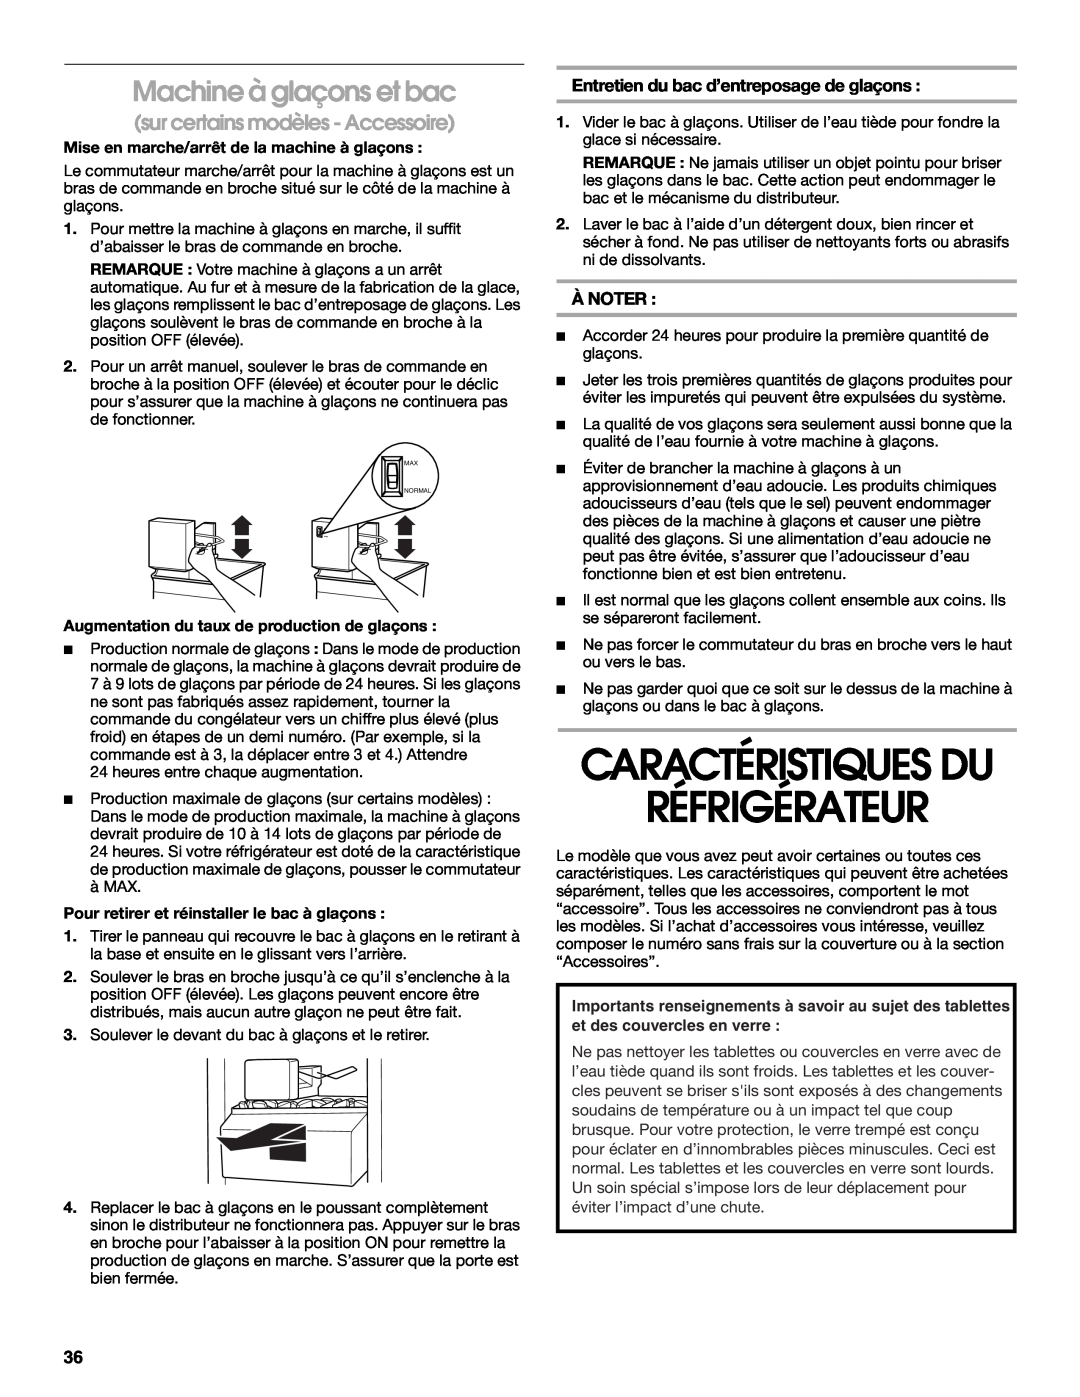 Whirlpool RS22AQXKQ02 manual Caractéristiques Du Réfrigérateur, Machine à glaçons et bac, sur certains modèles - Accessoire 